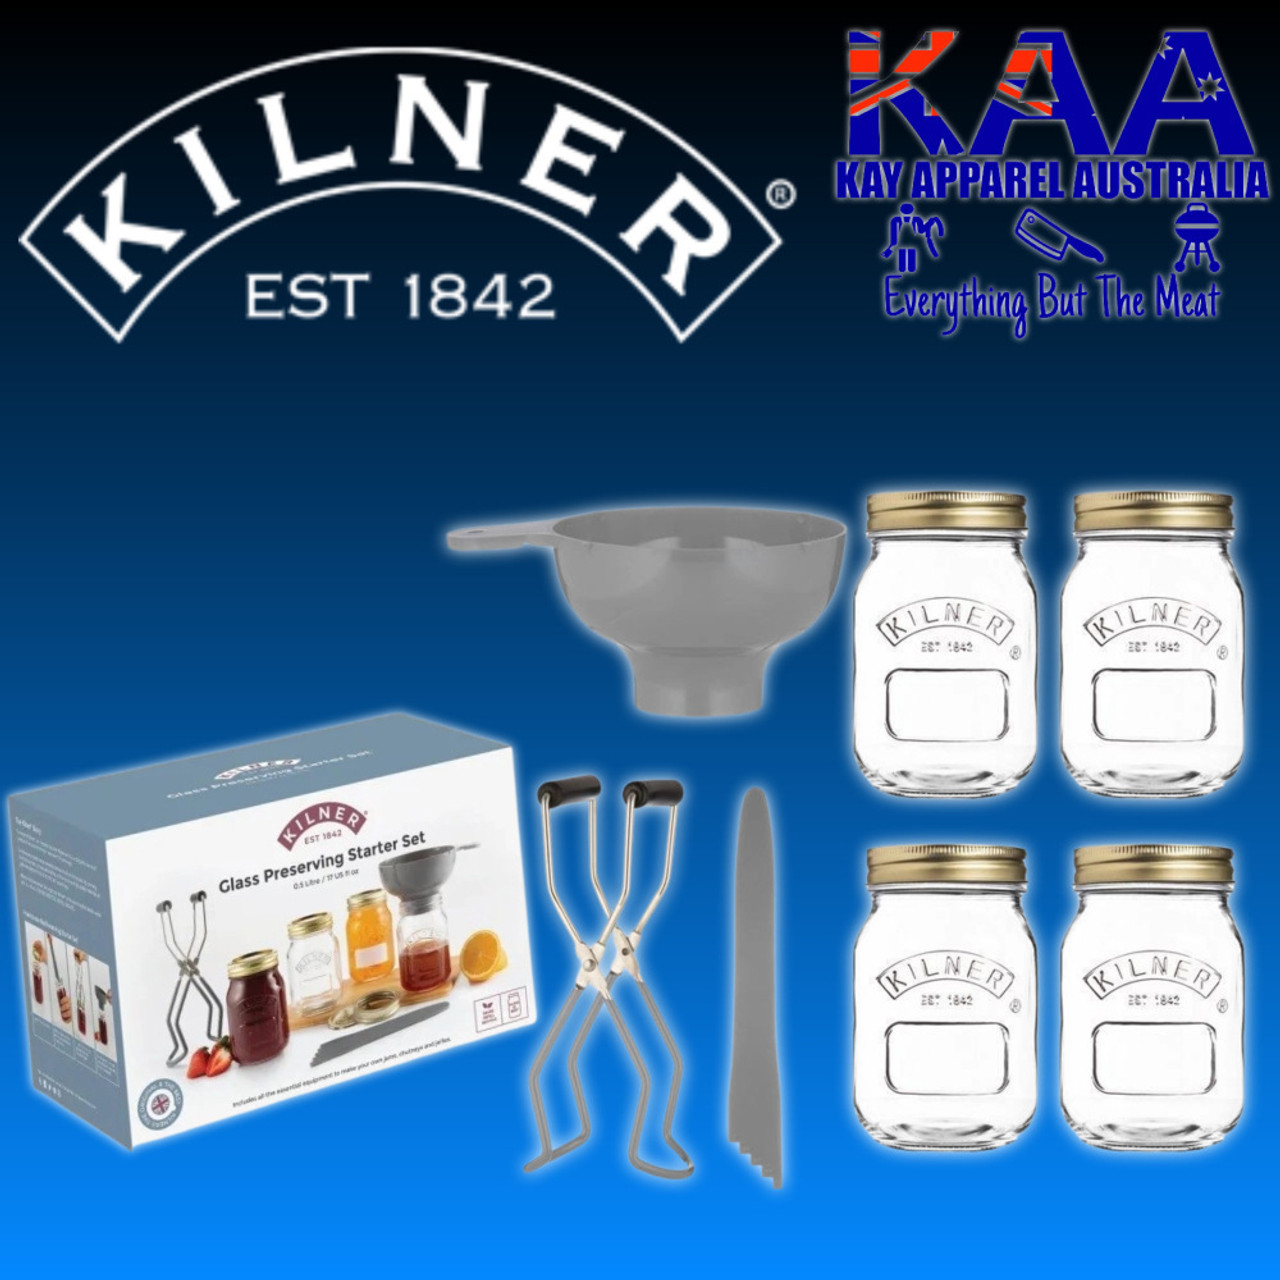 Kilner - Sourdough Starter Set